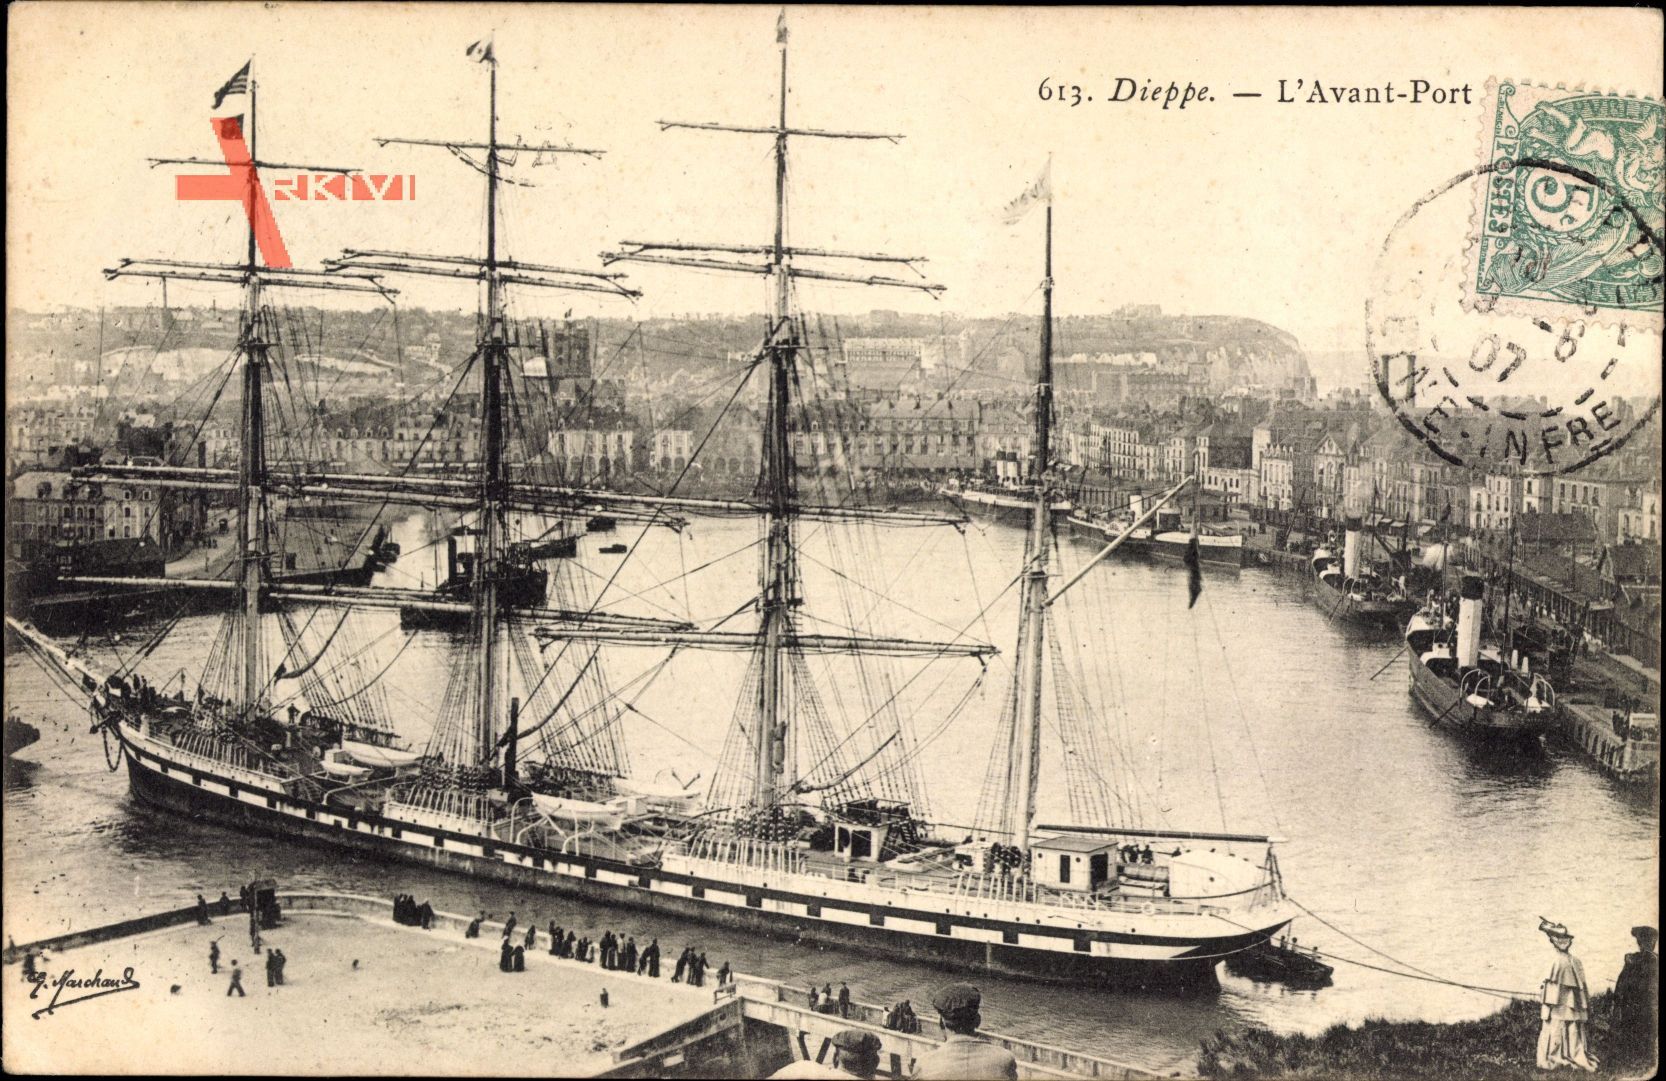 Dieppe Seine Maritime, LAvant Port, Viermastbark im Hafen, Segelschiff